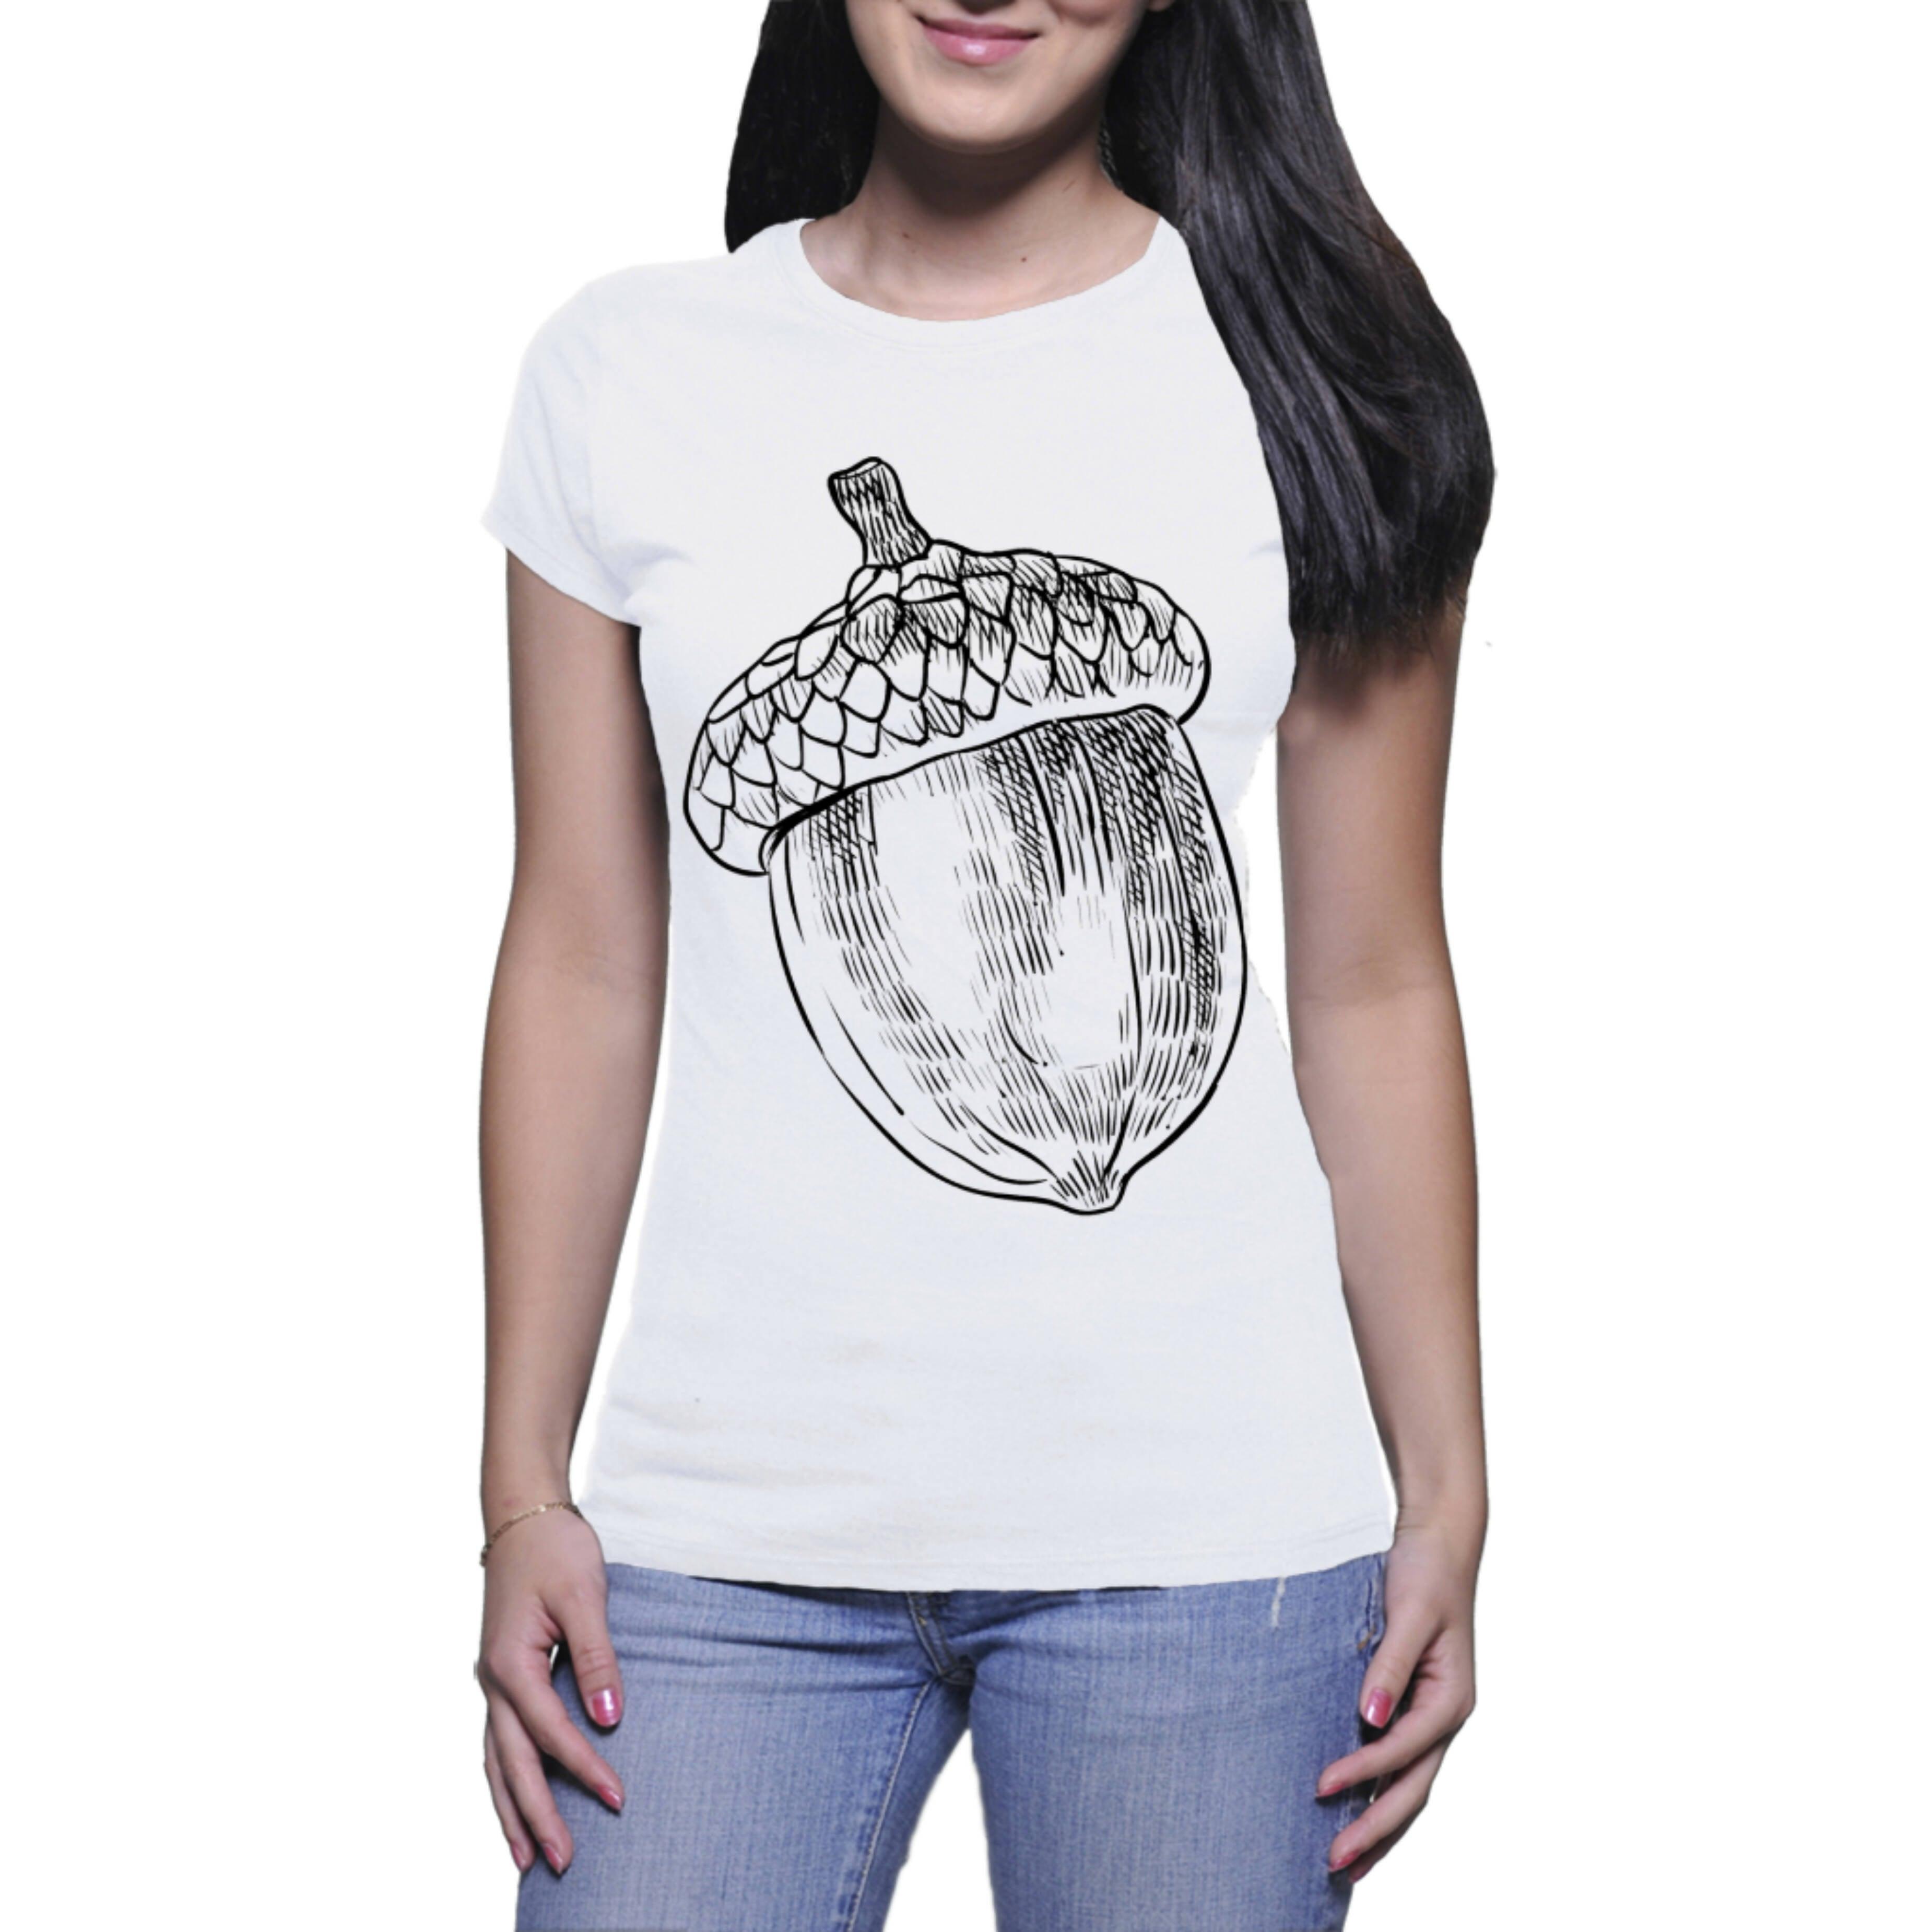 Acorn - Ladies T-shirt (Clothes Minded Art)